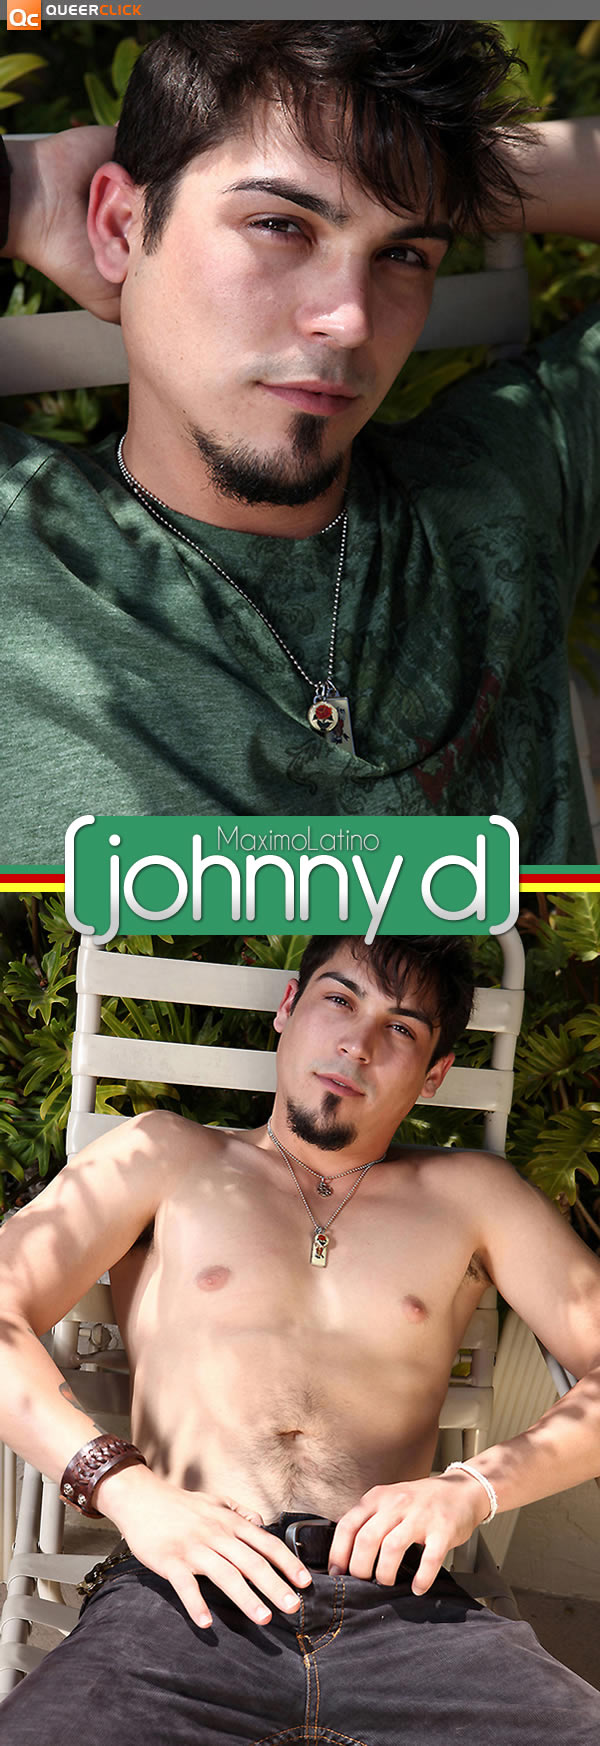 Maximo Latino: Johnny D